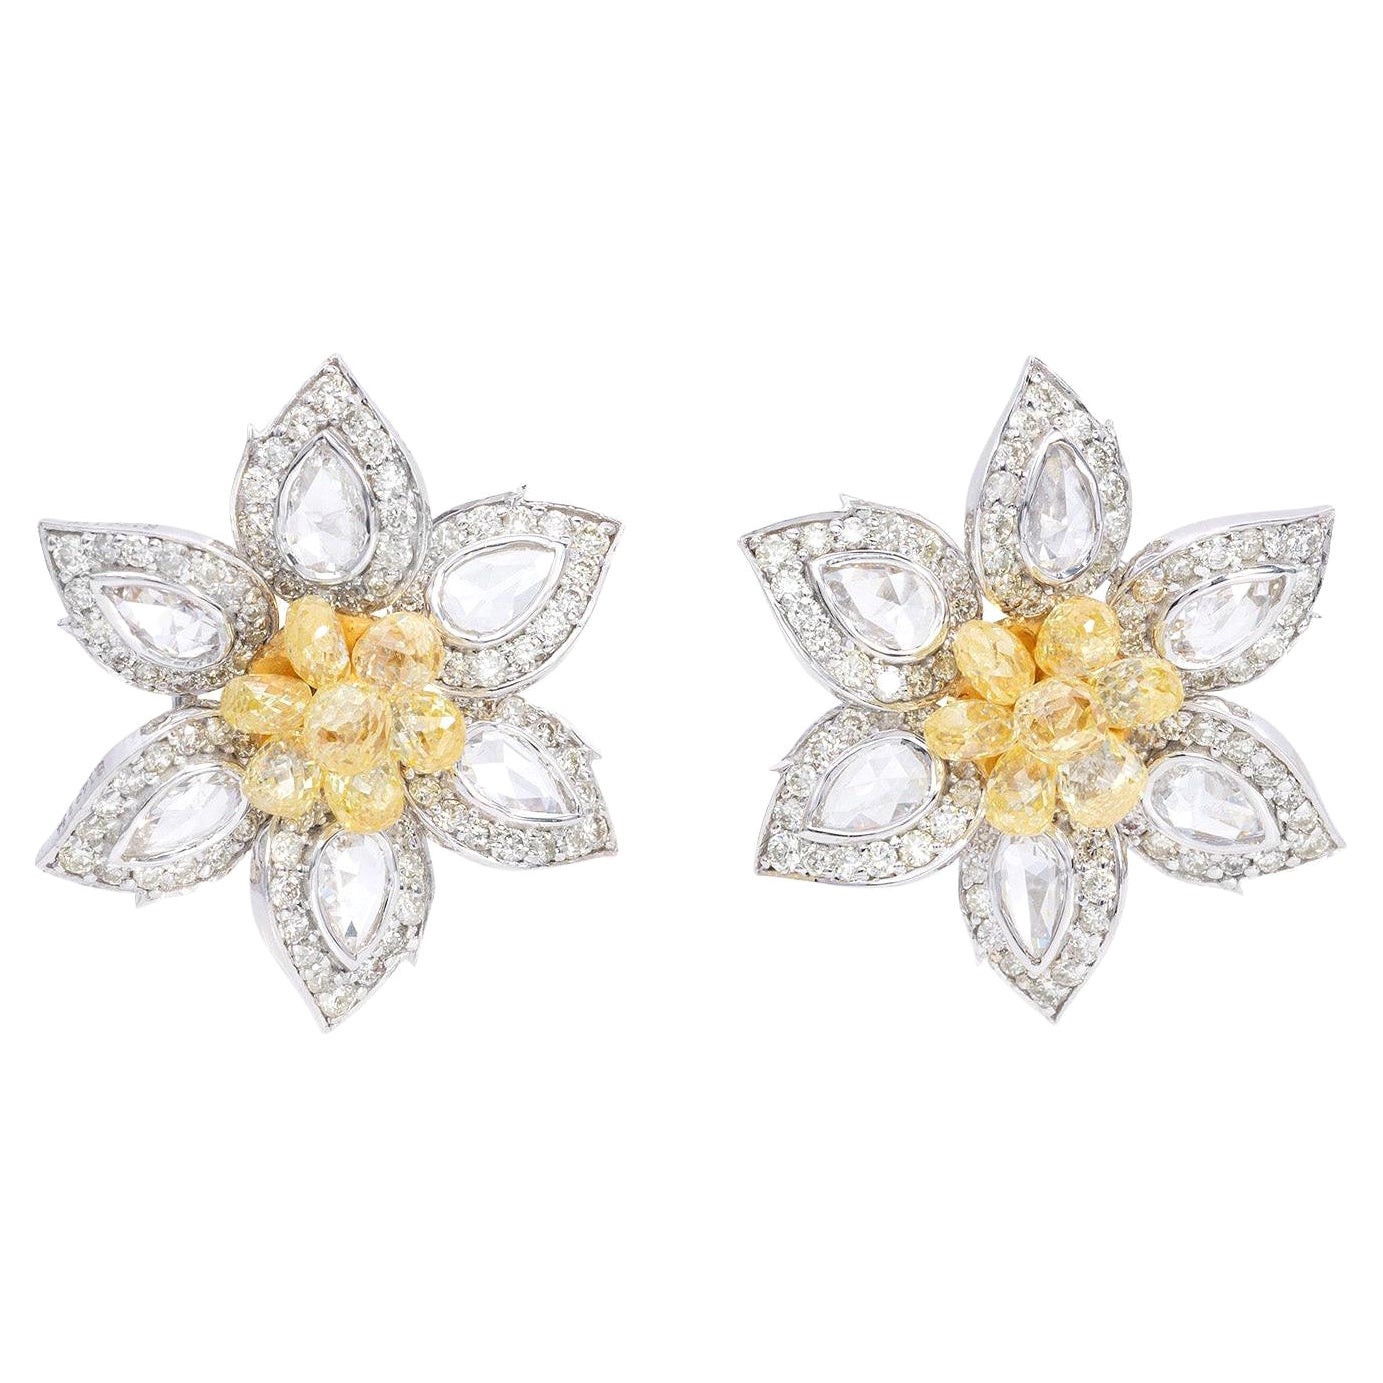 Flower Rose Cut Diamond and 4.08 Carat Fancy Yellow Briolette Earring